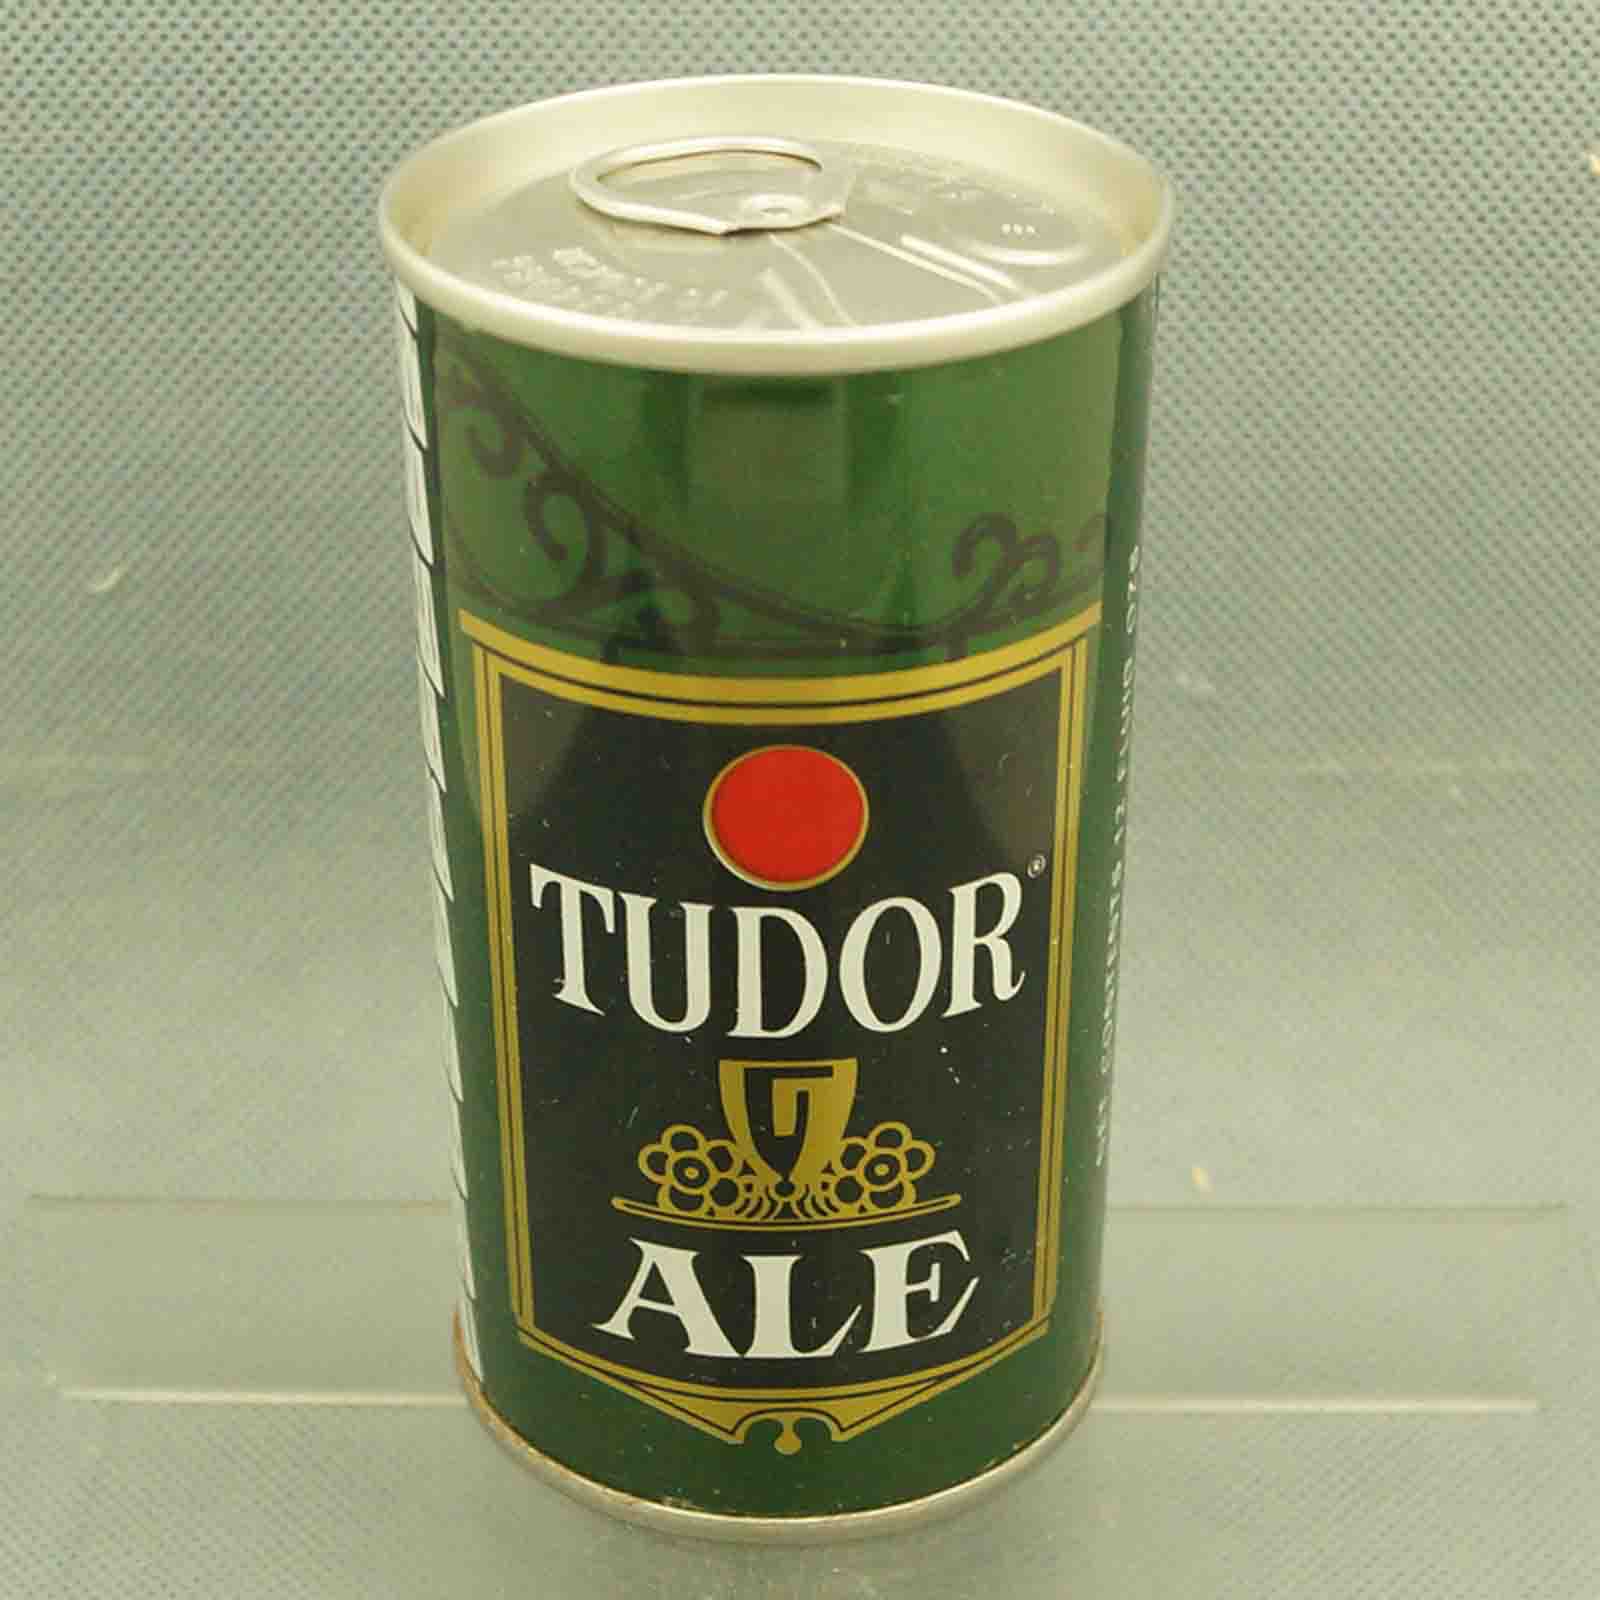 tudor 131-27 pull tab beer can 3